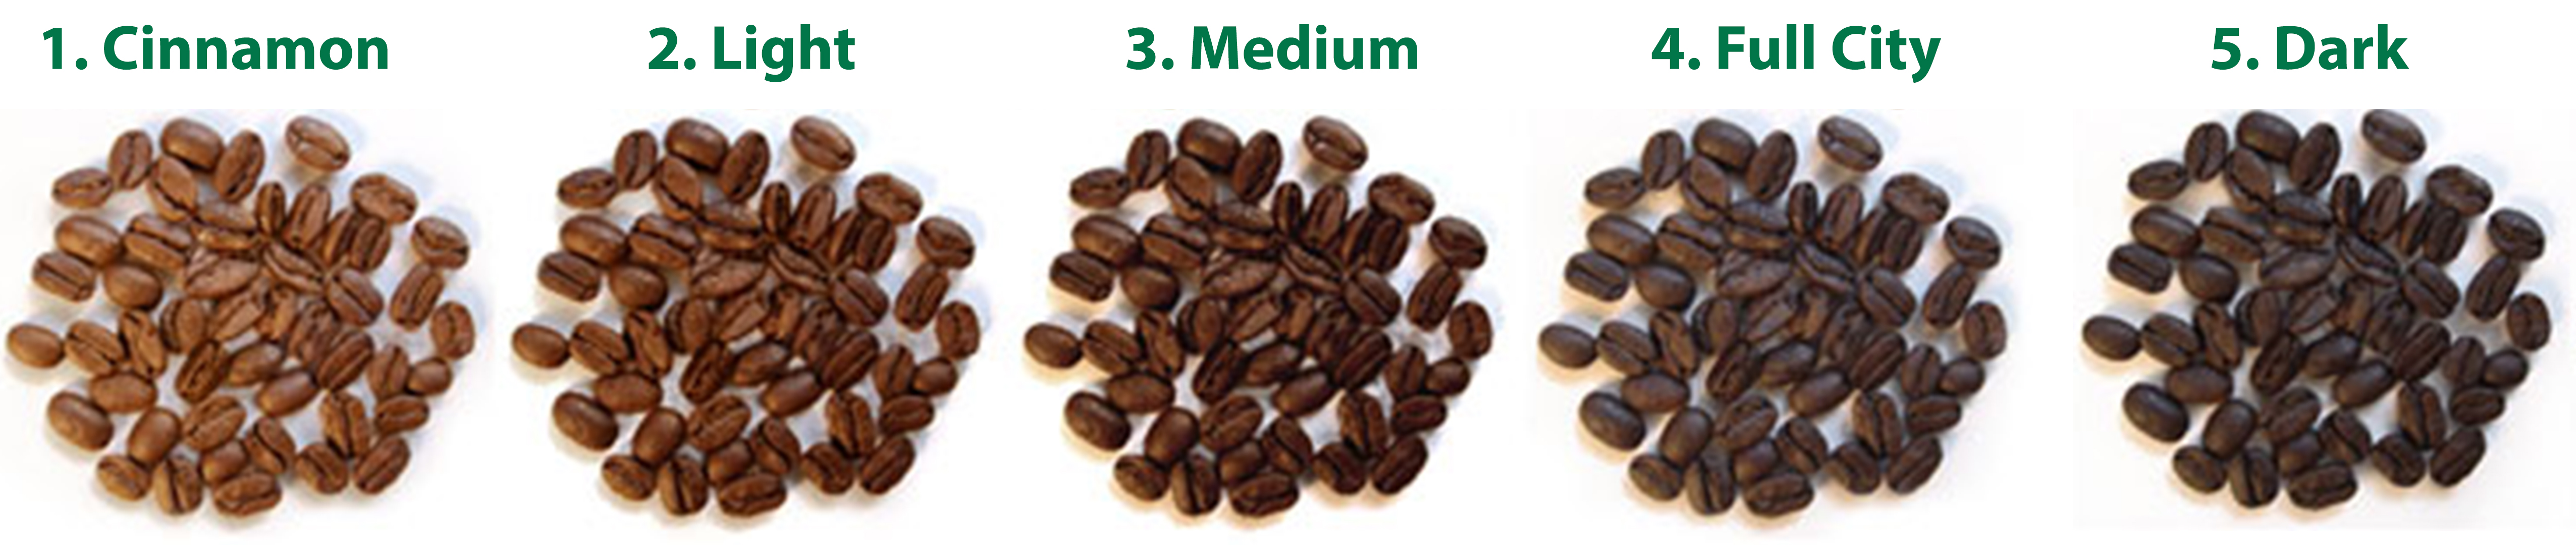 độ rang hạt cà phê của motherland coffee